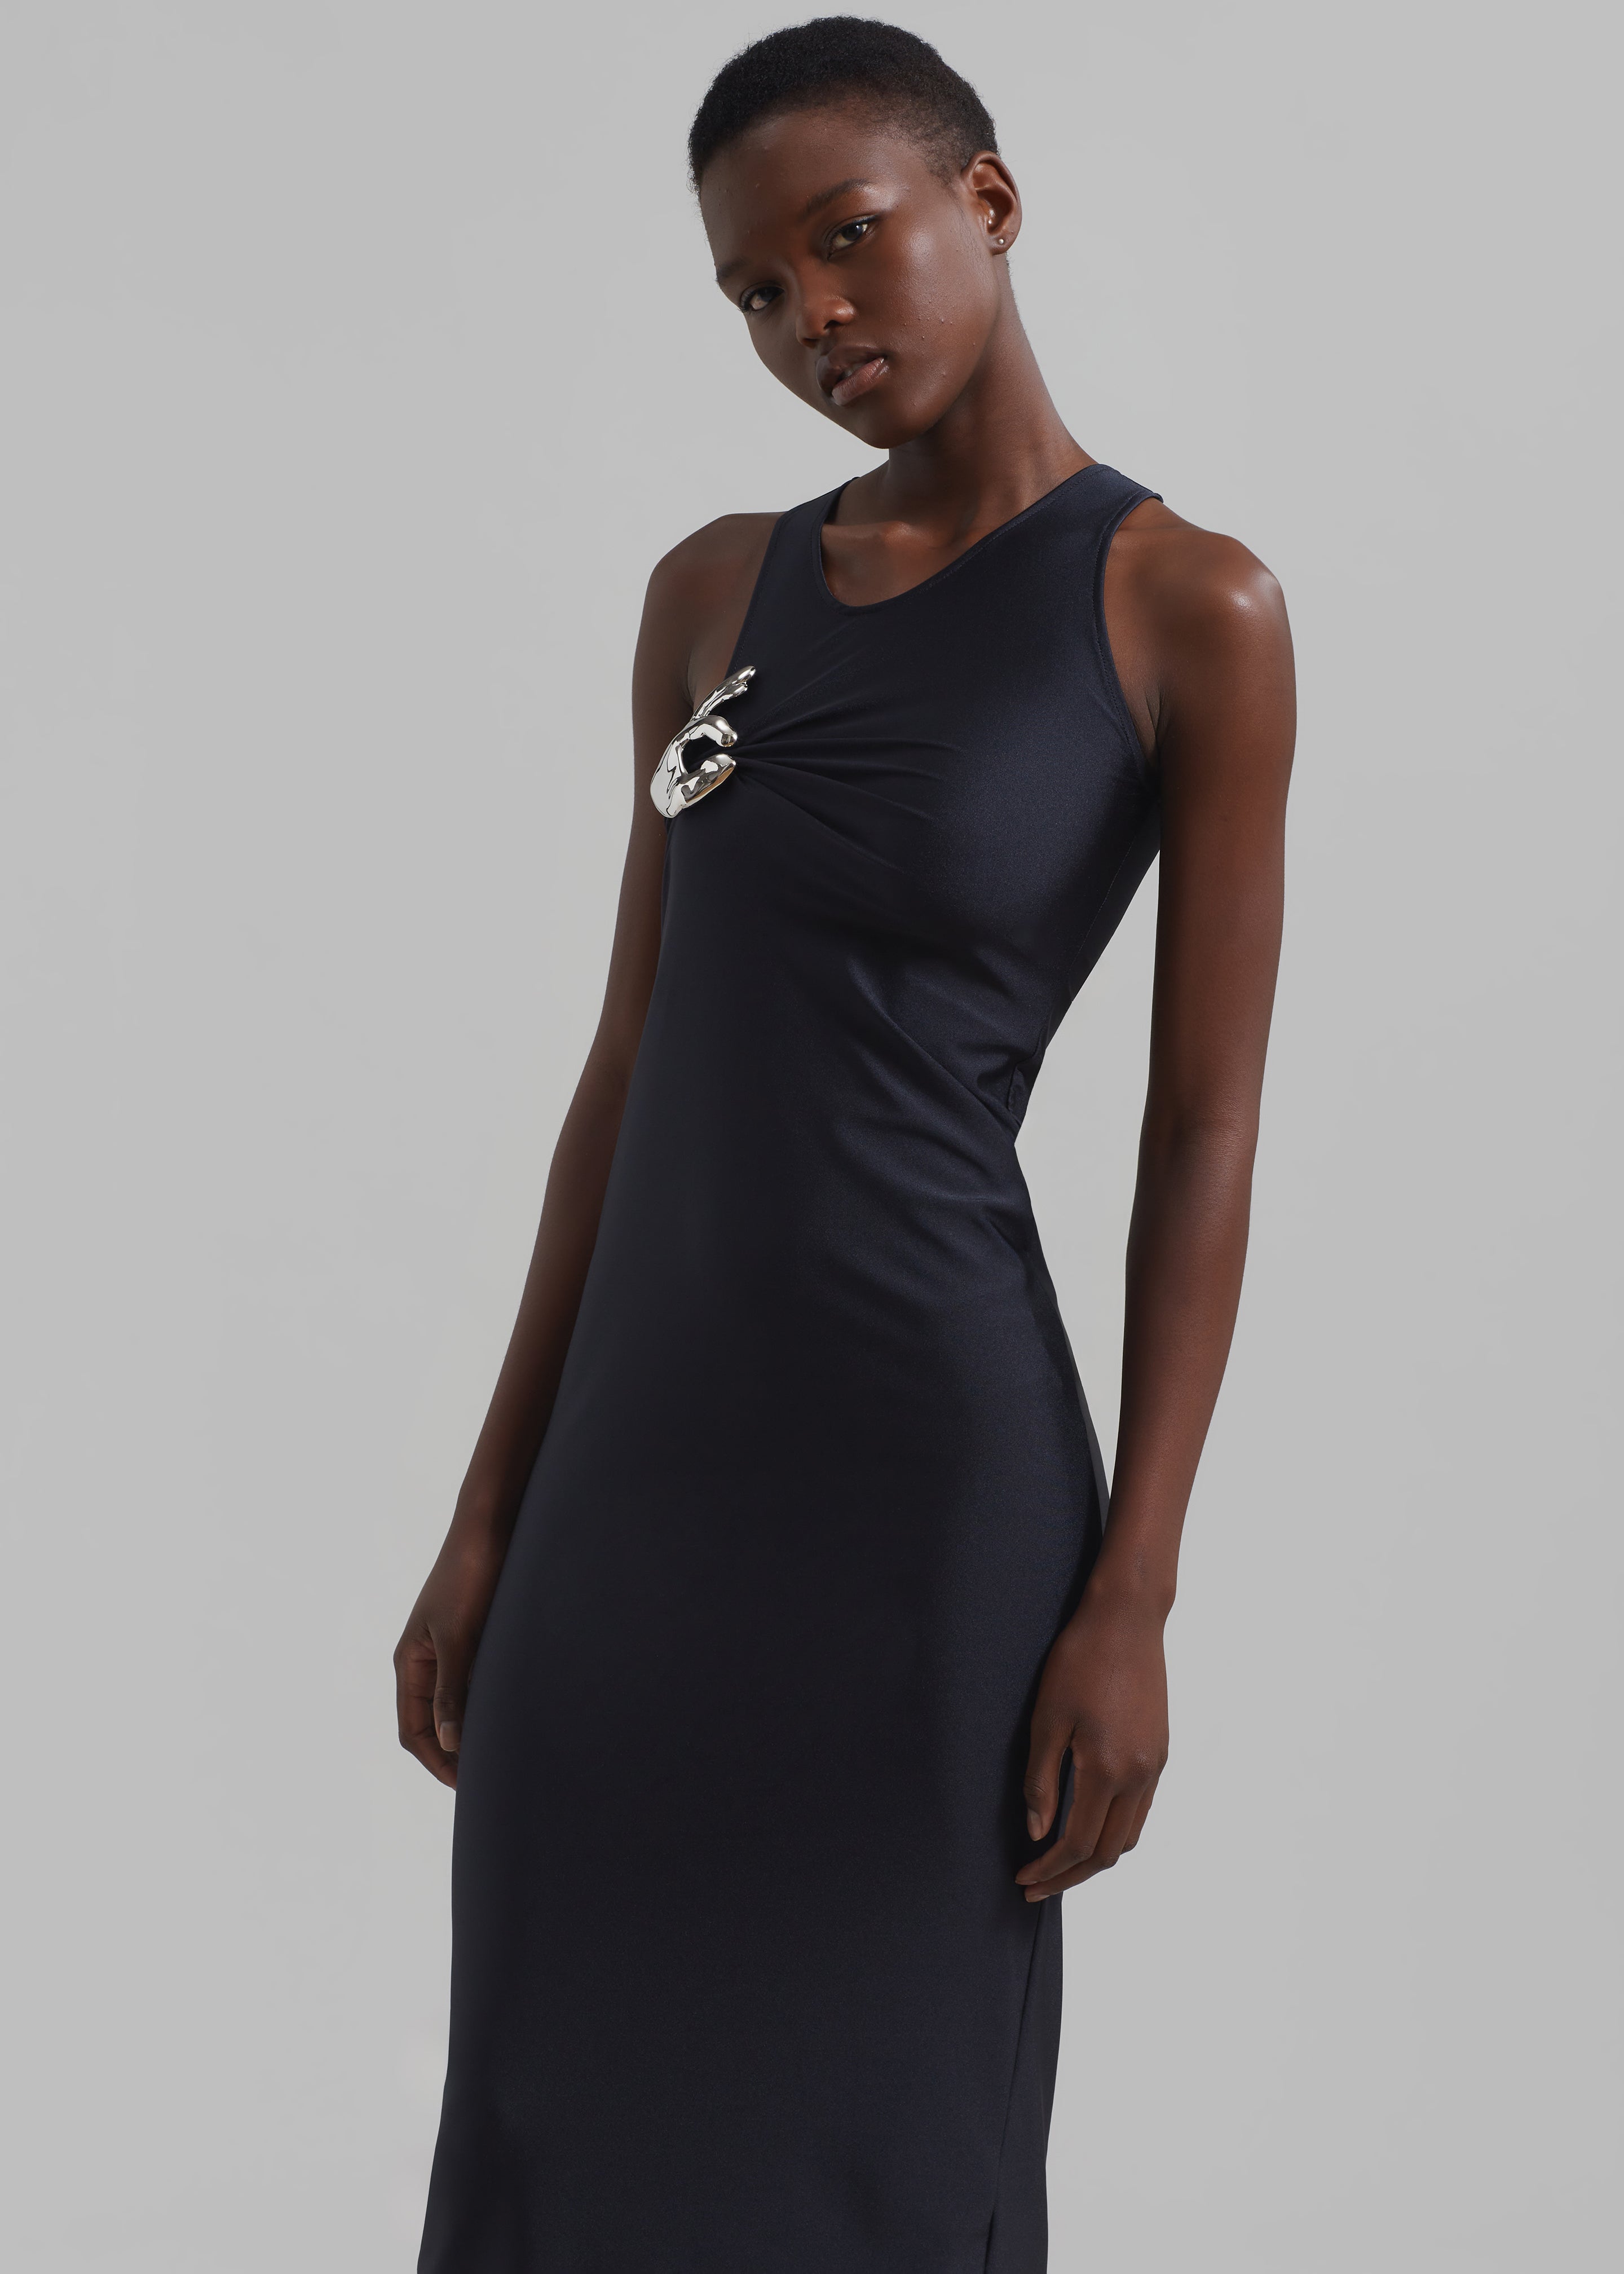 Coperni Single Emoji Dress - Black - 5